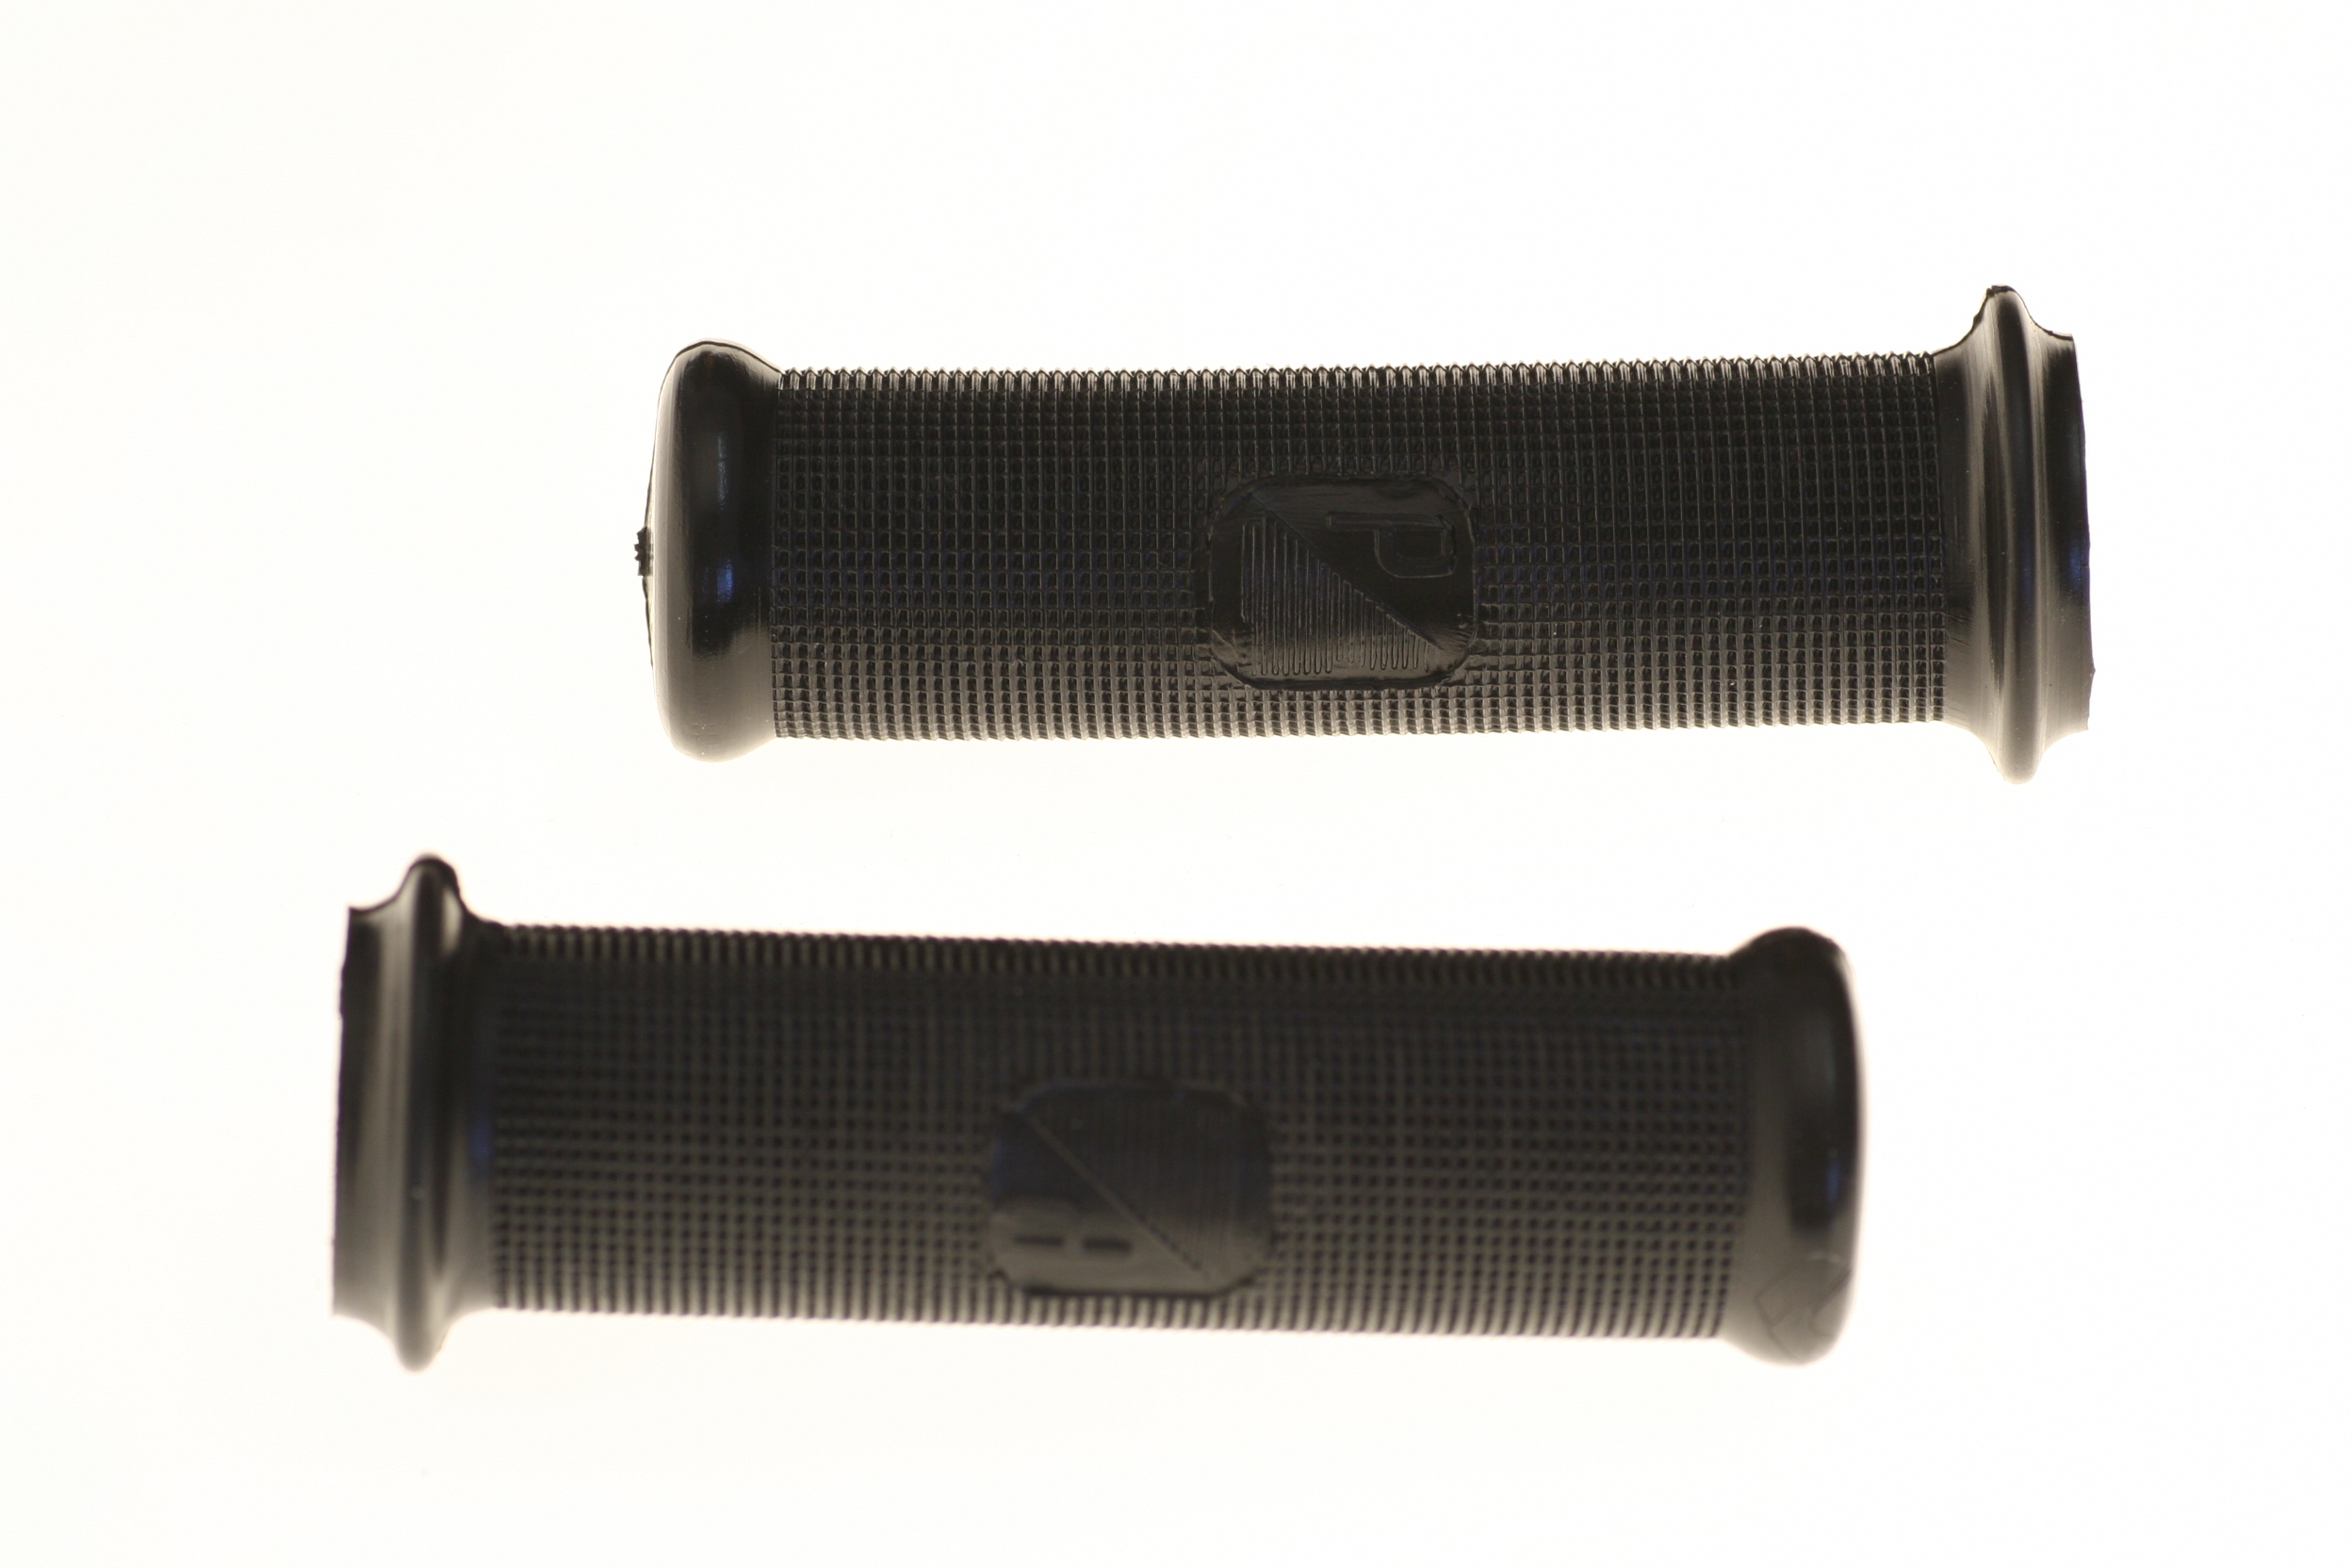 Griffe schwarz, Ø 24mm, mit Piaggio-Emblem